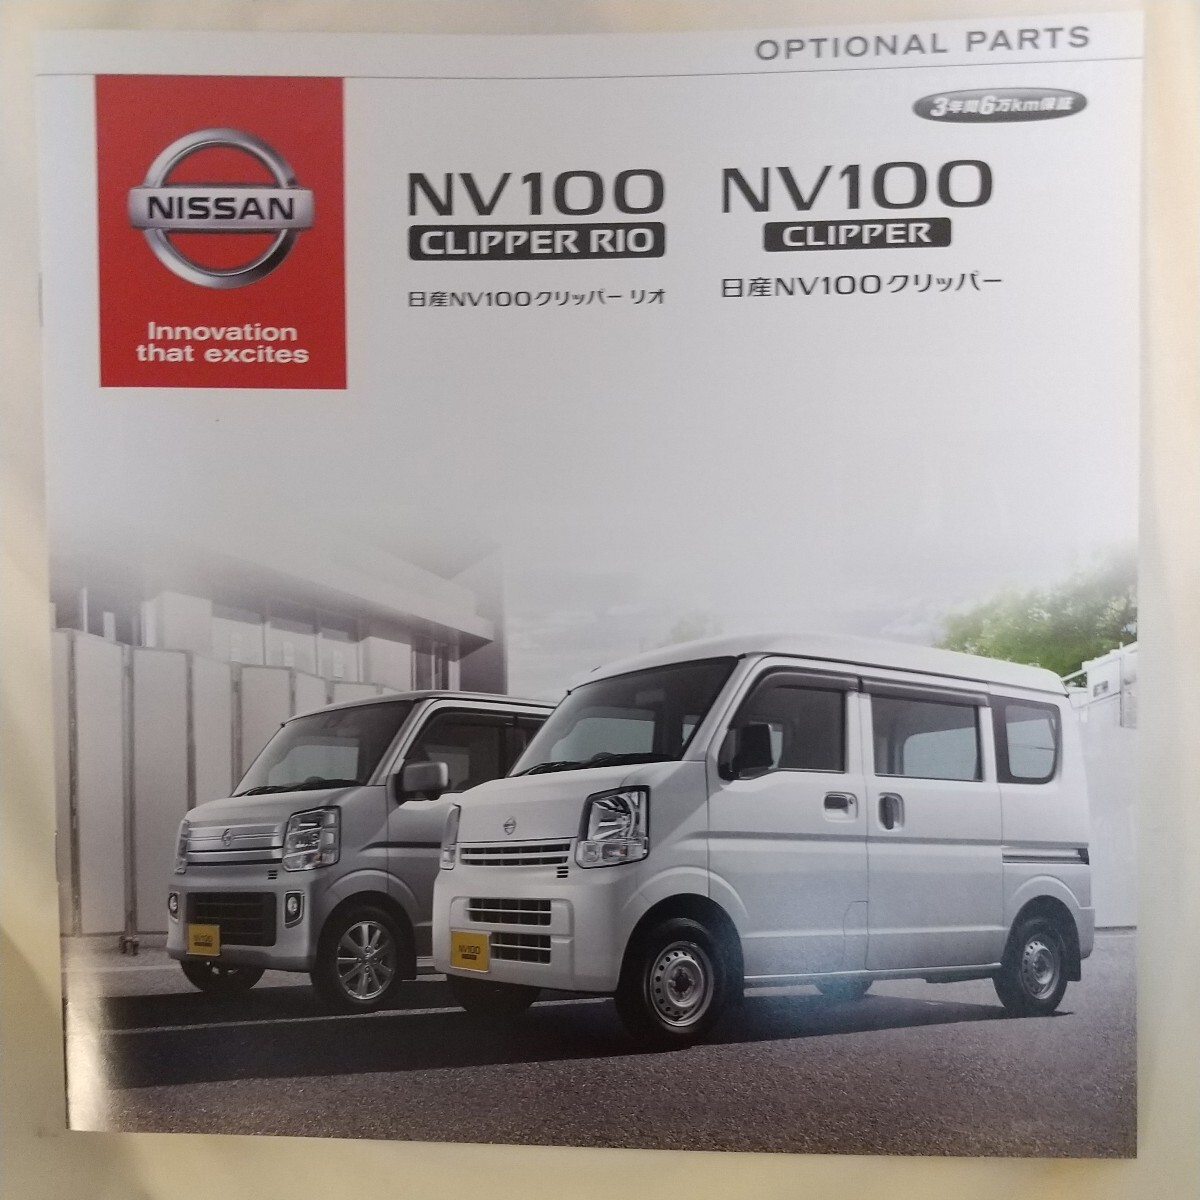 # эпоха Heisei 27 год 3 месяц версия # Nissan NV100 Clipper основной каталог 